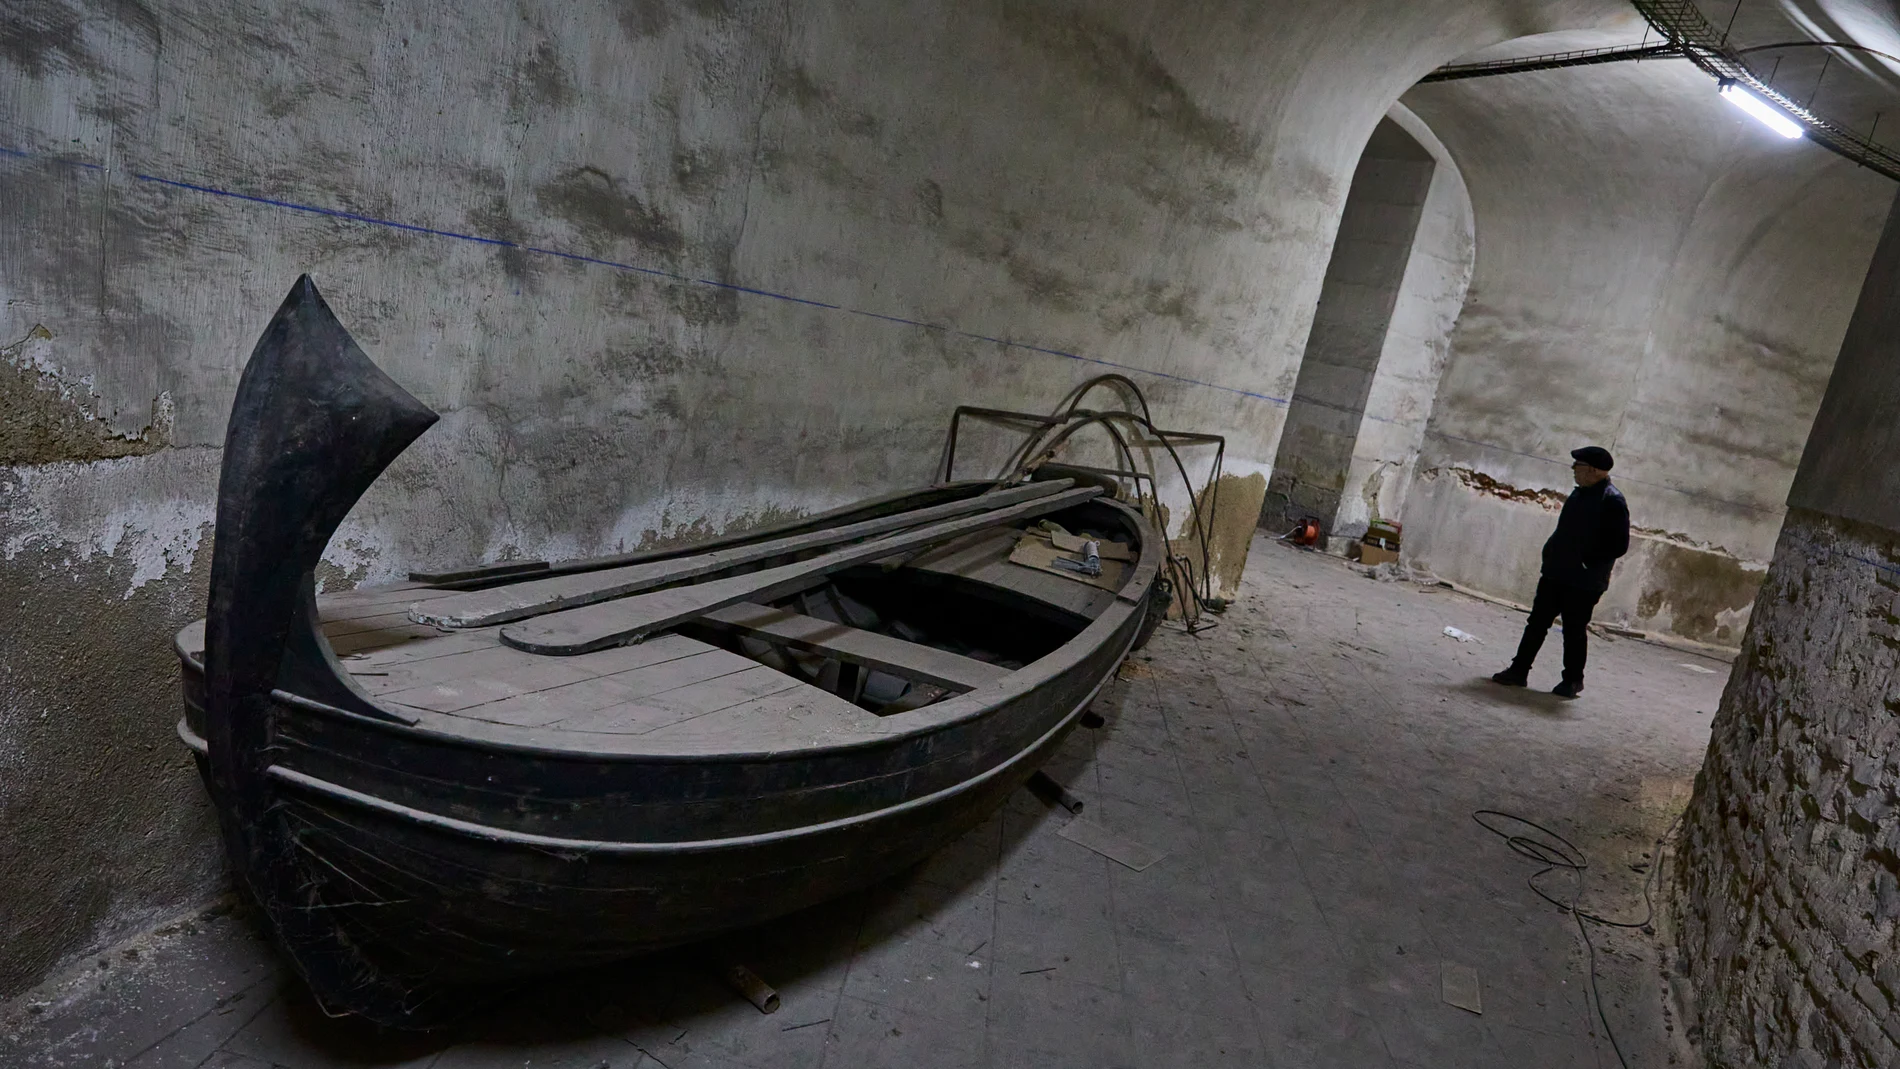 Obras de remodelación de la cripta de la Basílica de San Francisco el Grande.En las obras se ha encontrado una barca o embarcación.